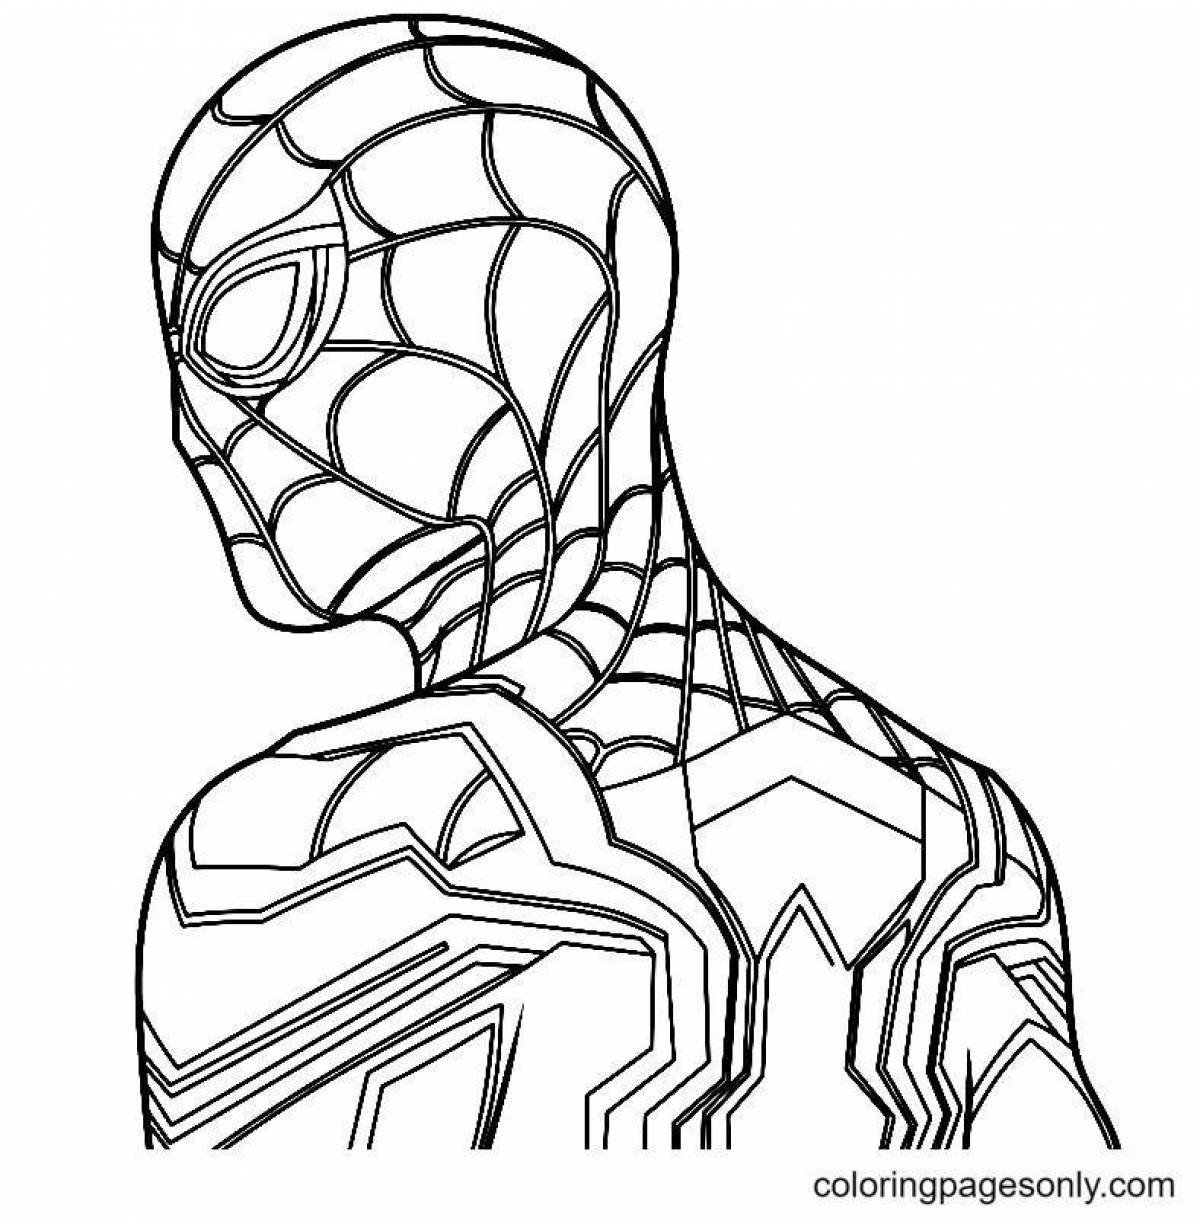 Раскраска человек паук том Холланд